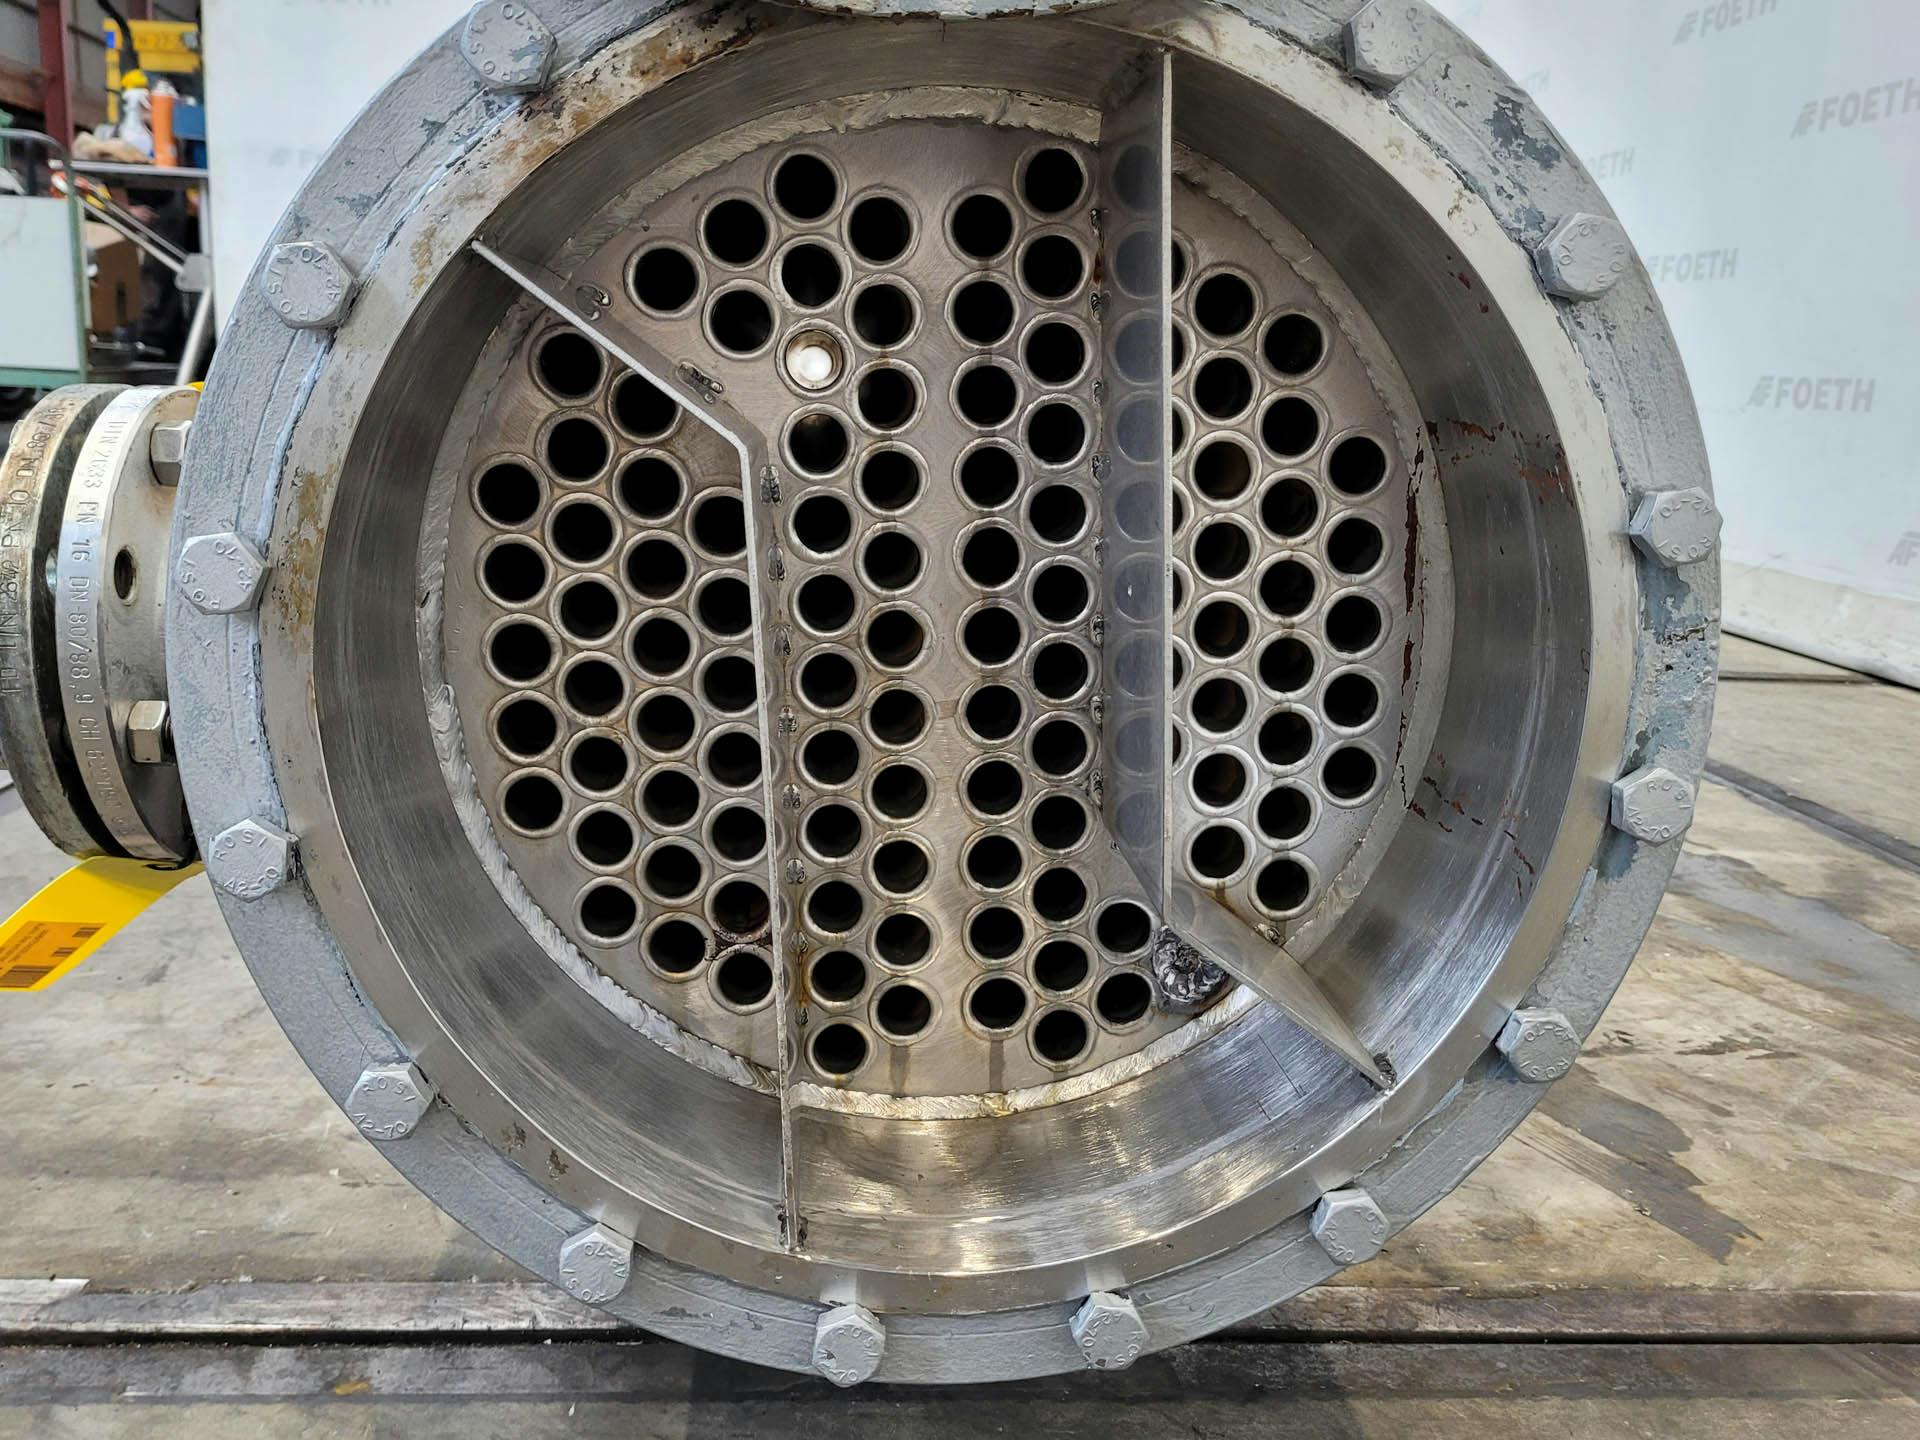 Kuehni condenser - Échangeur de température tubulaire - image 5